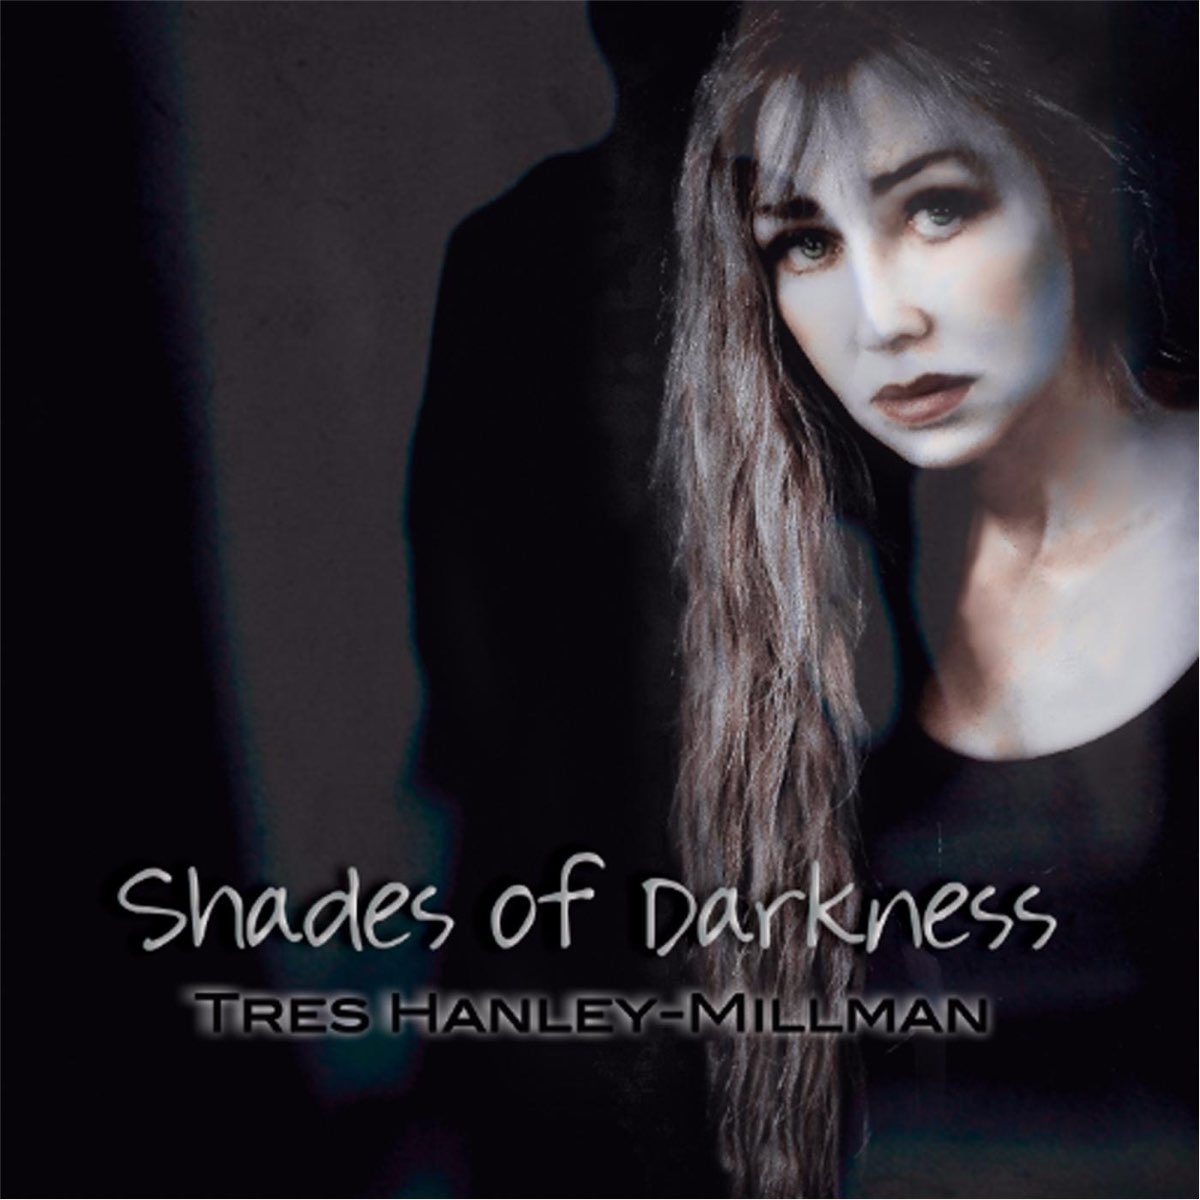 Darkness fades